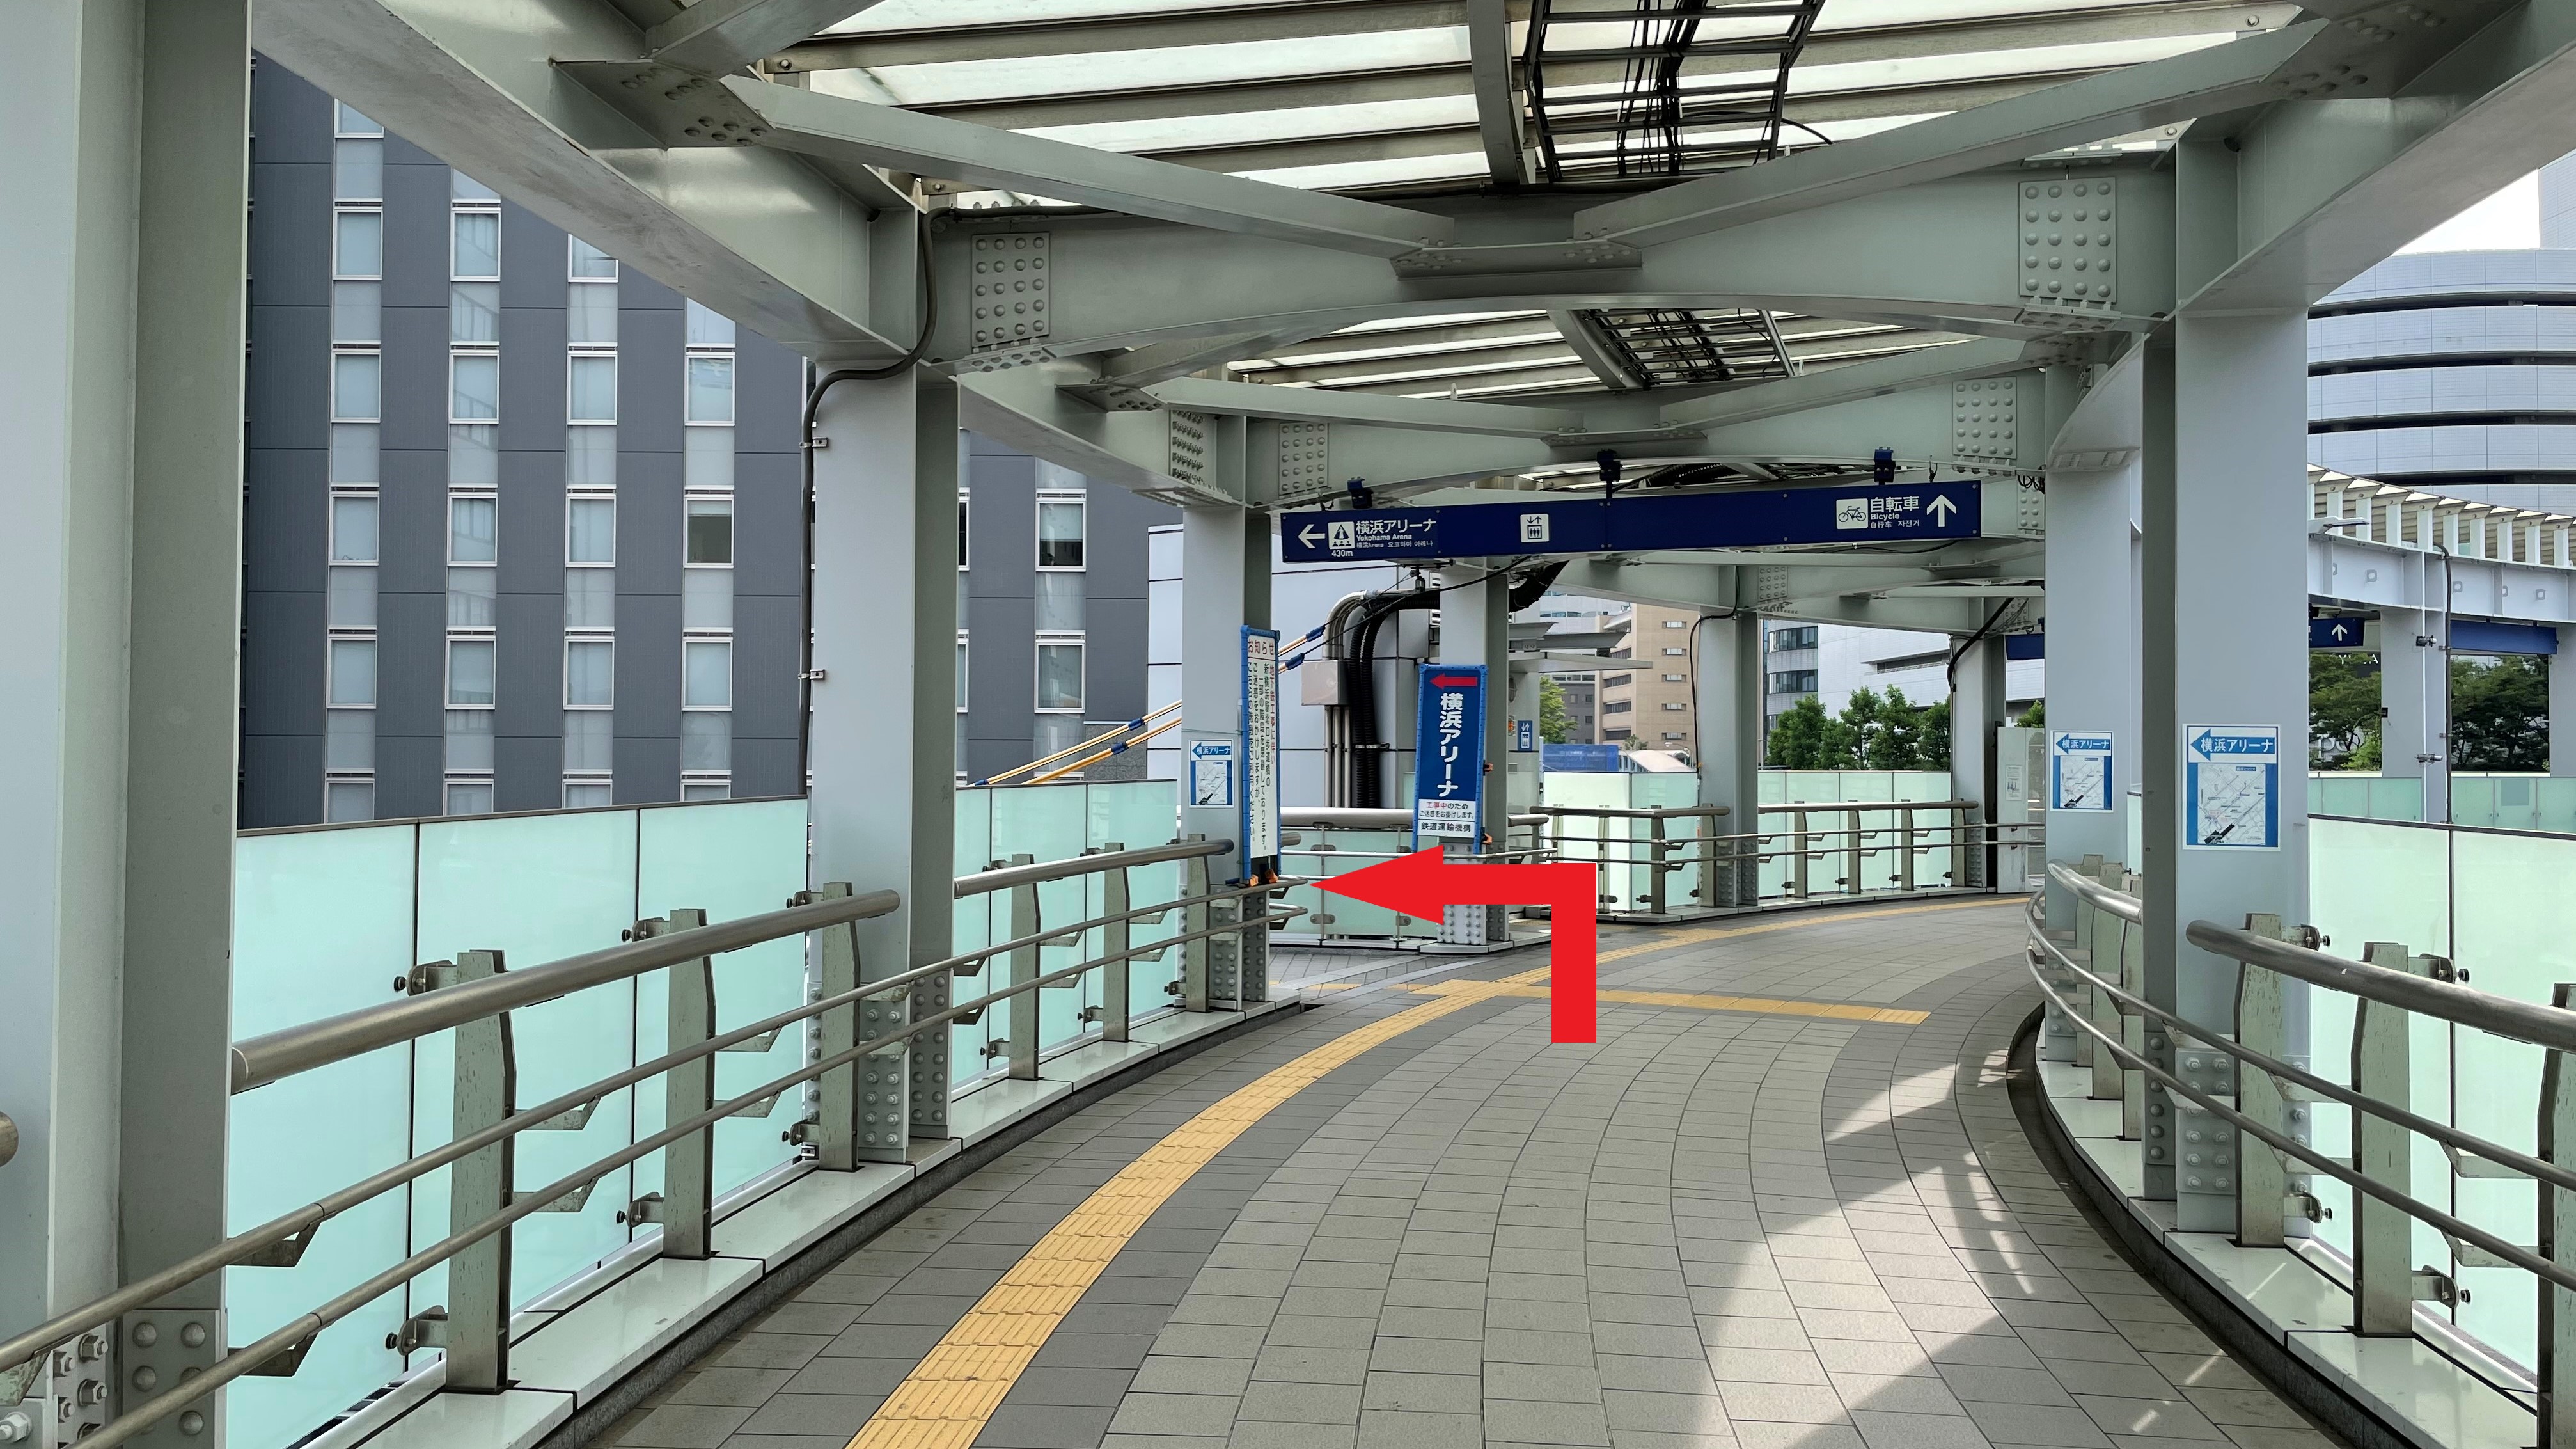 順路⑧「横浜アリーナ」方面の階段か、手前のエレベータをご利用ください